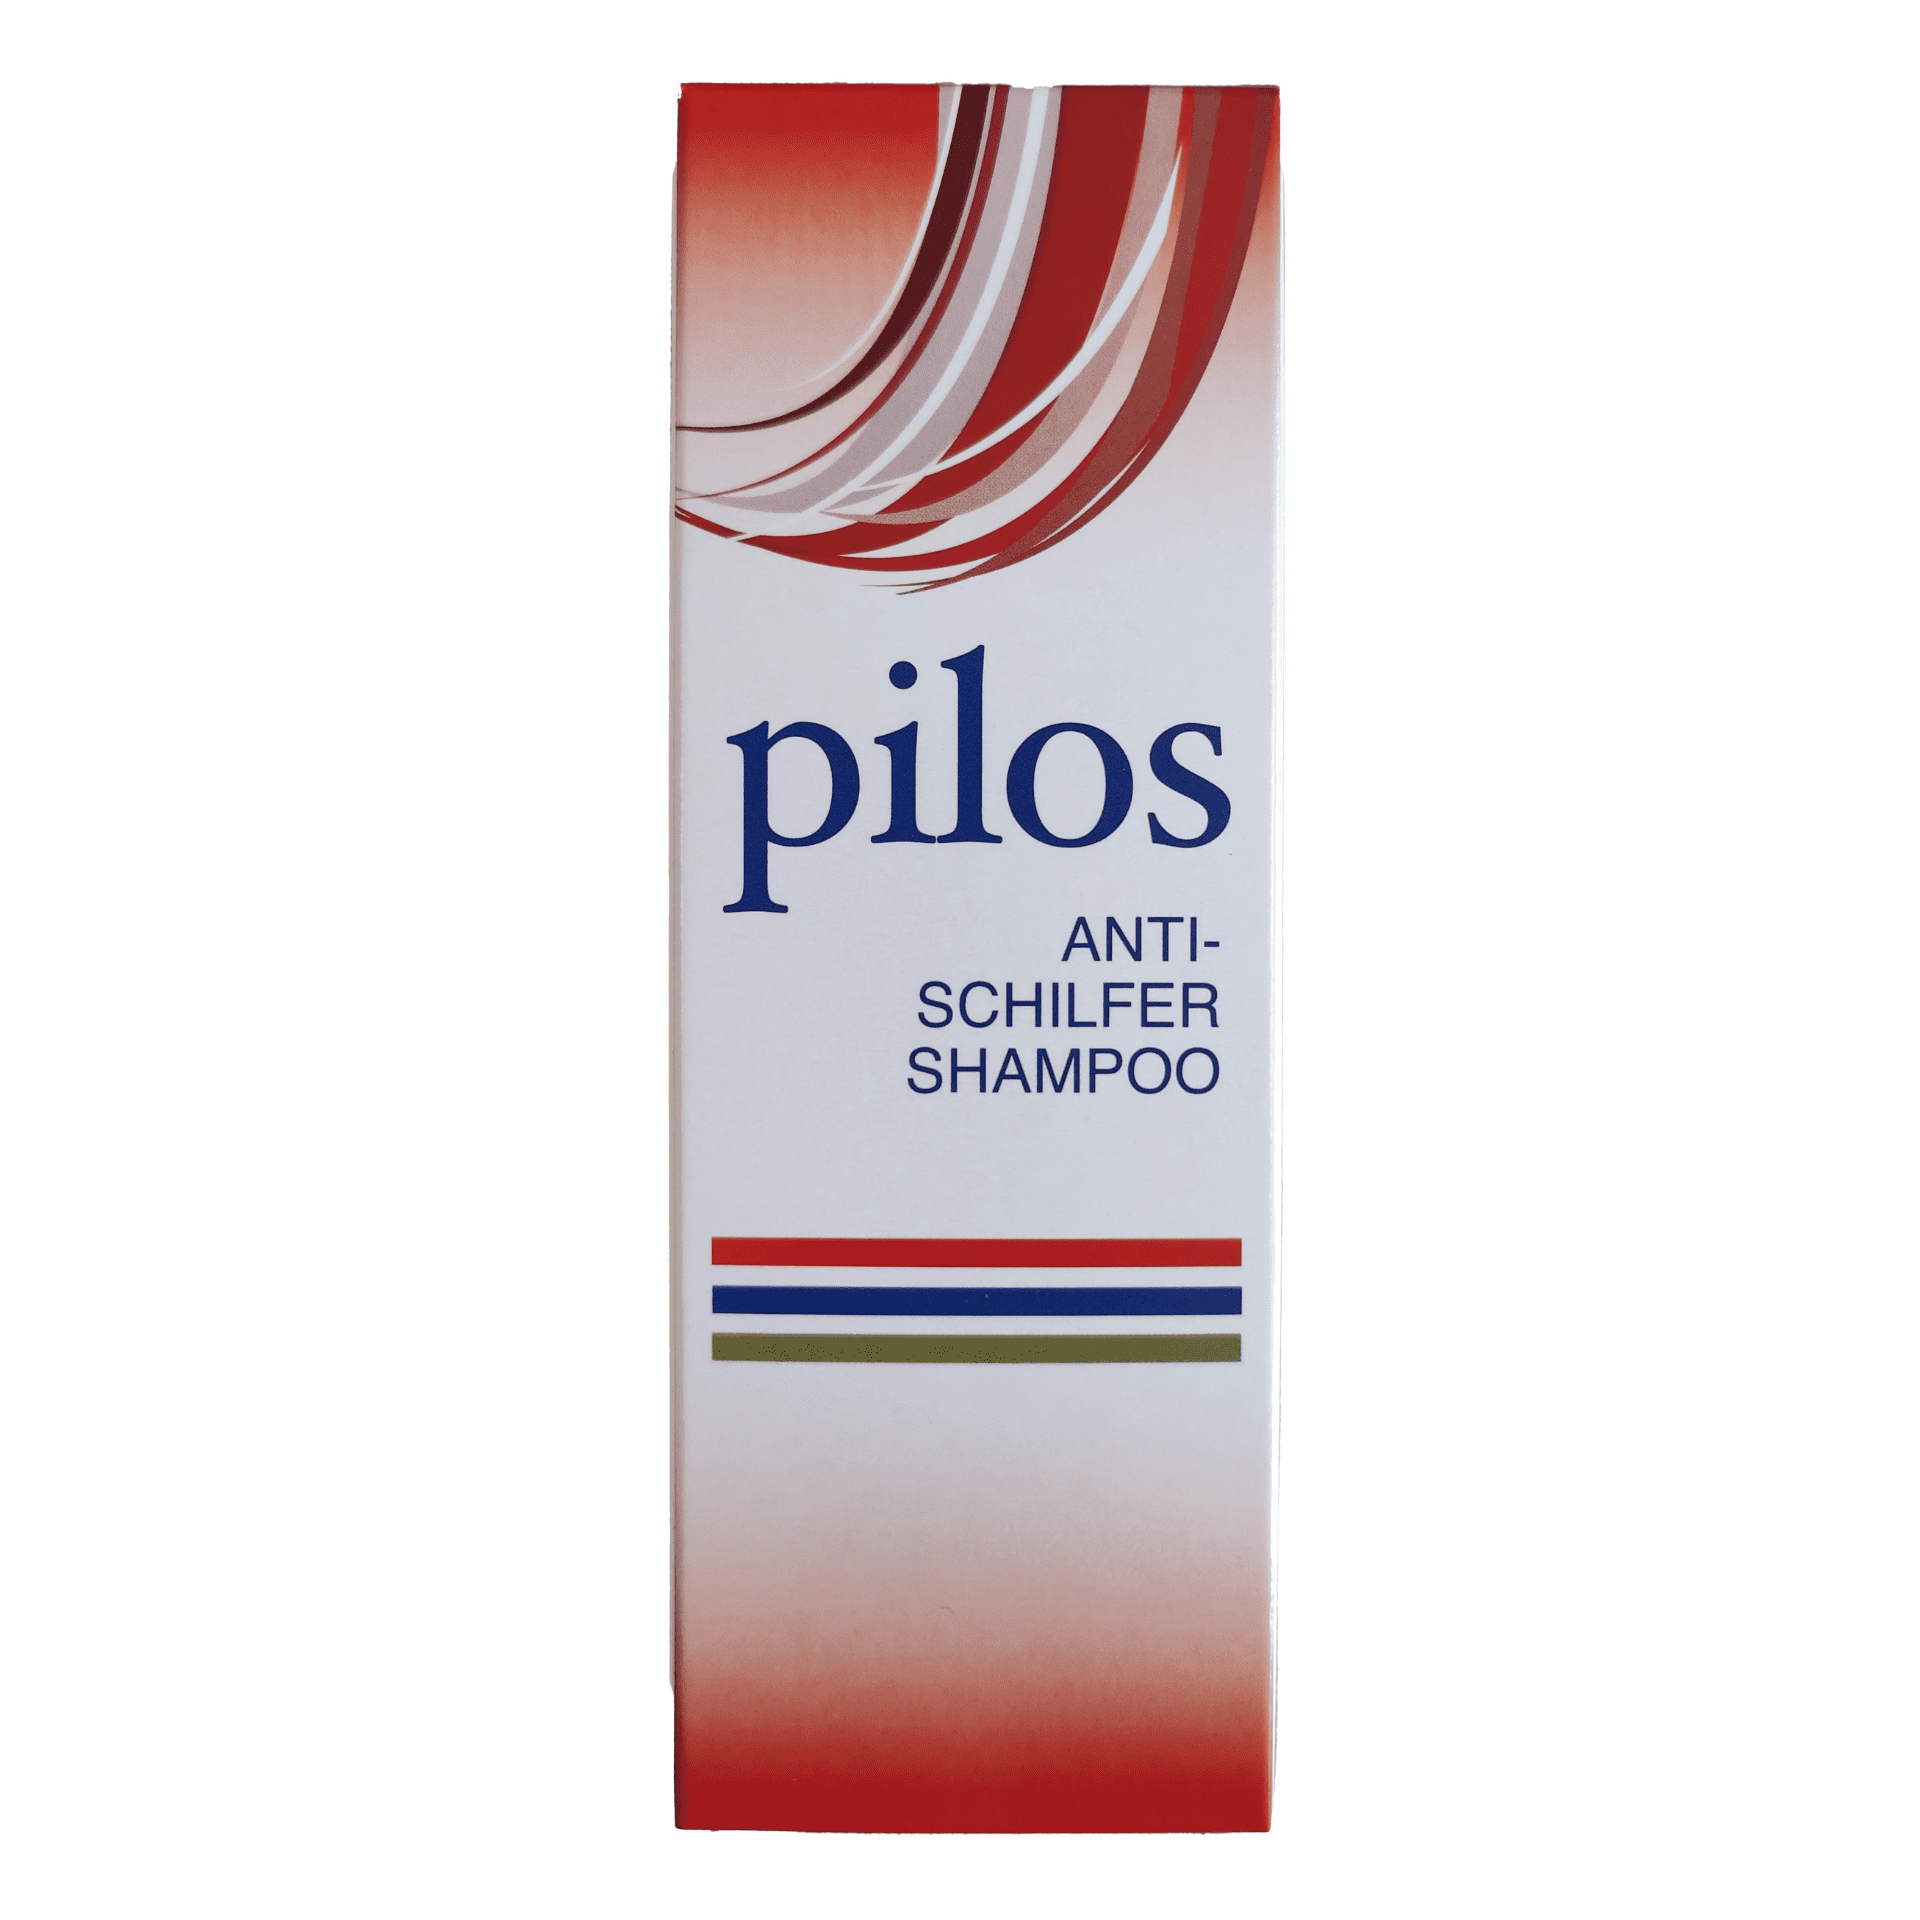 Pilos Anti-Schilfer Shampoo